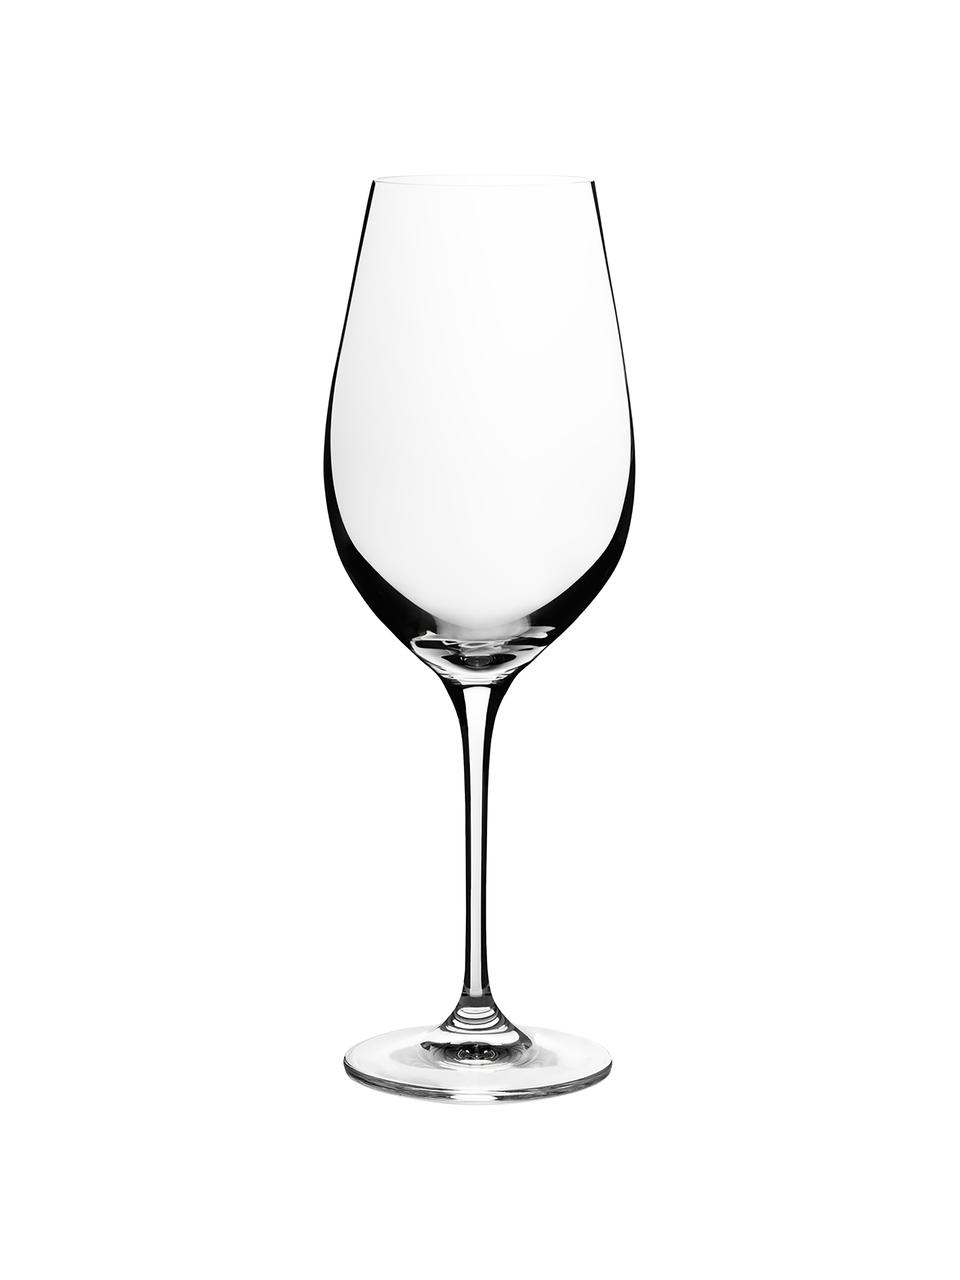 Rode wijnglazen Harmony, 6 stuks, Edele glans - het kristalglas breekt het licht en dit creëert een sprankelend effect, waardoor elk wijnglas als een bijzonder moment kan worden ervaren., Transparant, Ø 8 x H 24 cm